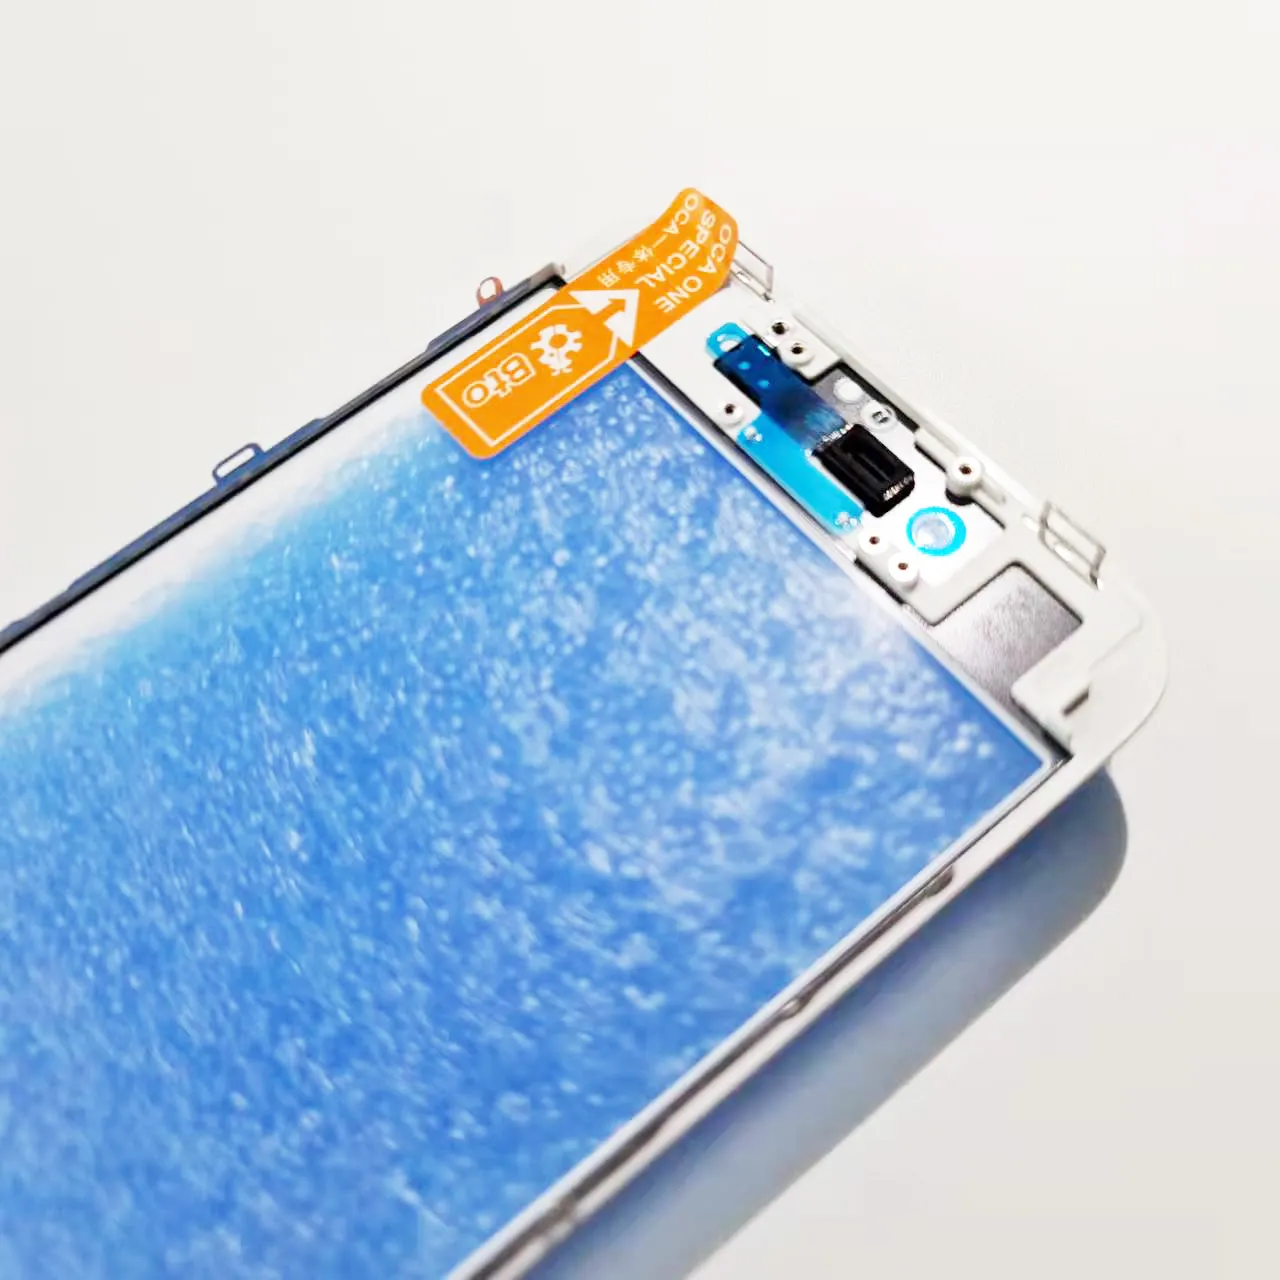 KULI niedriger Preis Für iPhone 5 5S 6 6s 6plus Handy-LCD-Außen glas mit Oca-Rahmen Bildschirm Wartungs zubehör Ersatz